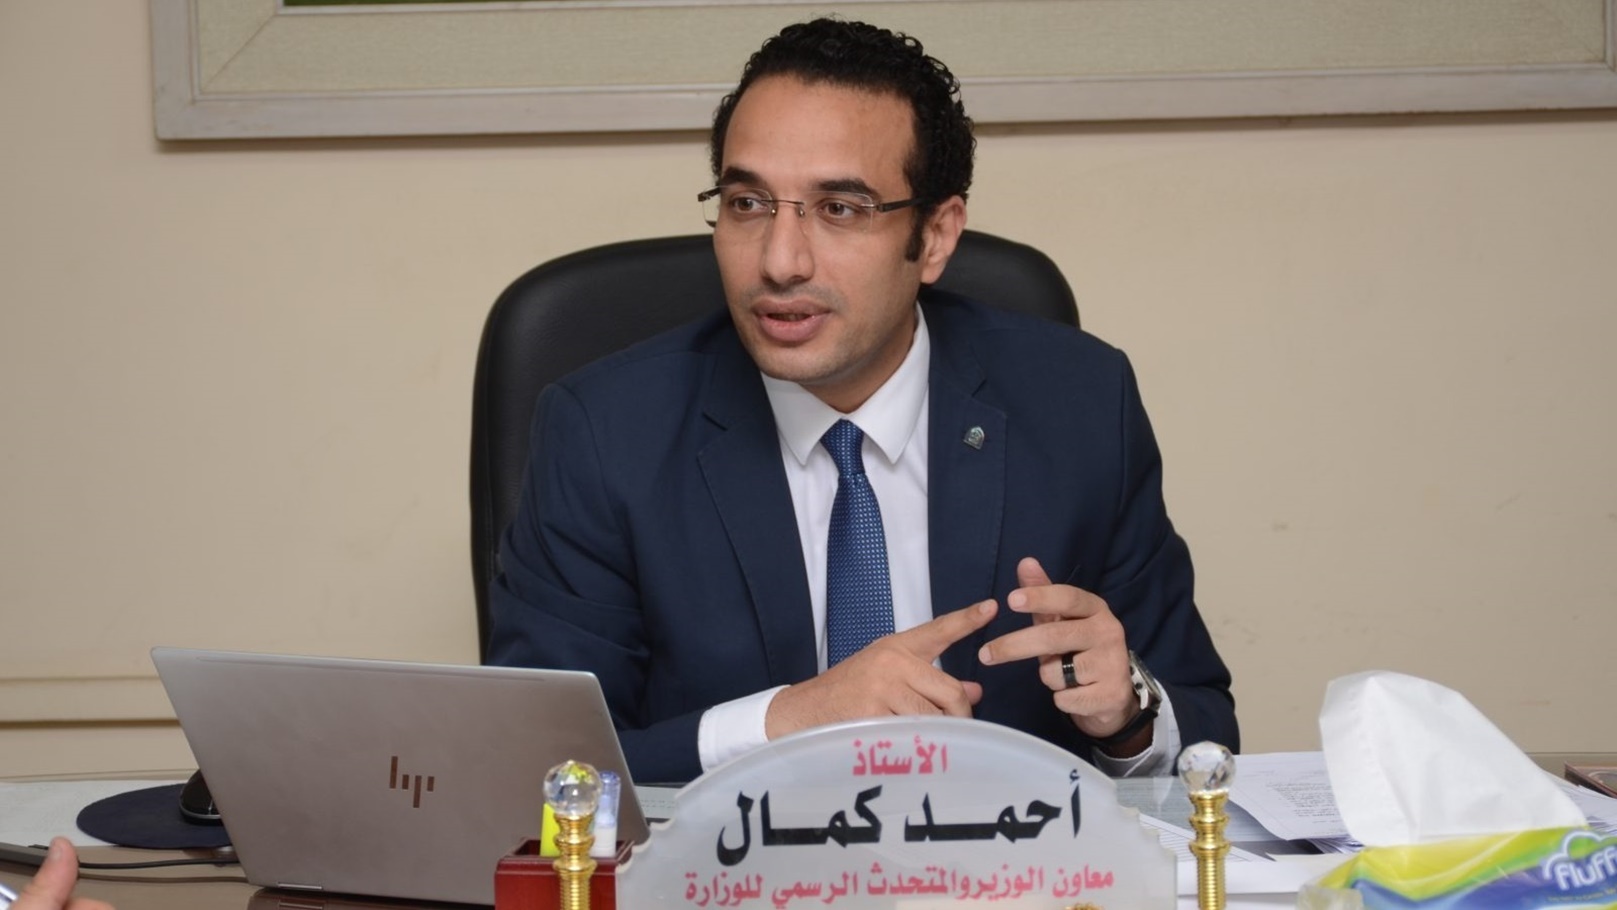 أحمد كمال المتحدث الرسمي لوزارة التموين والتجارة الداخلية